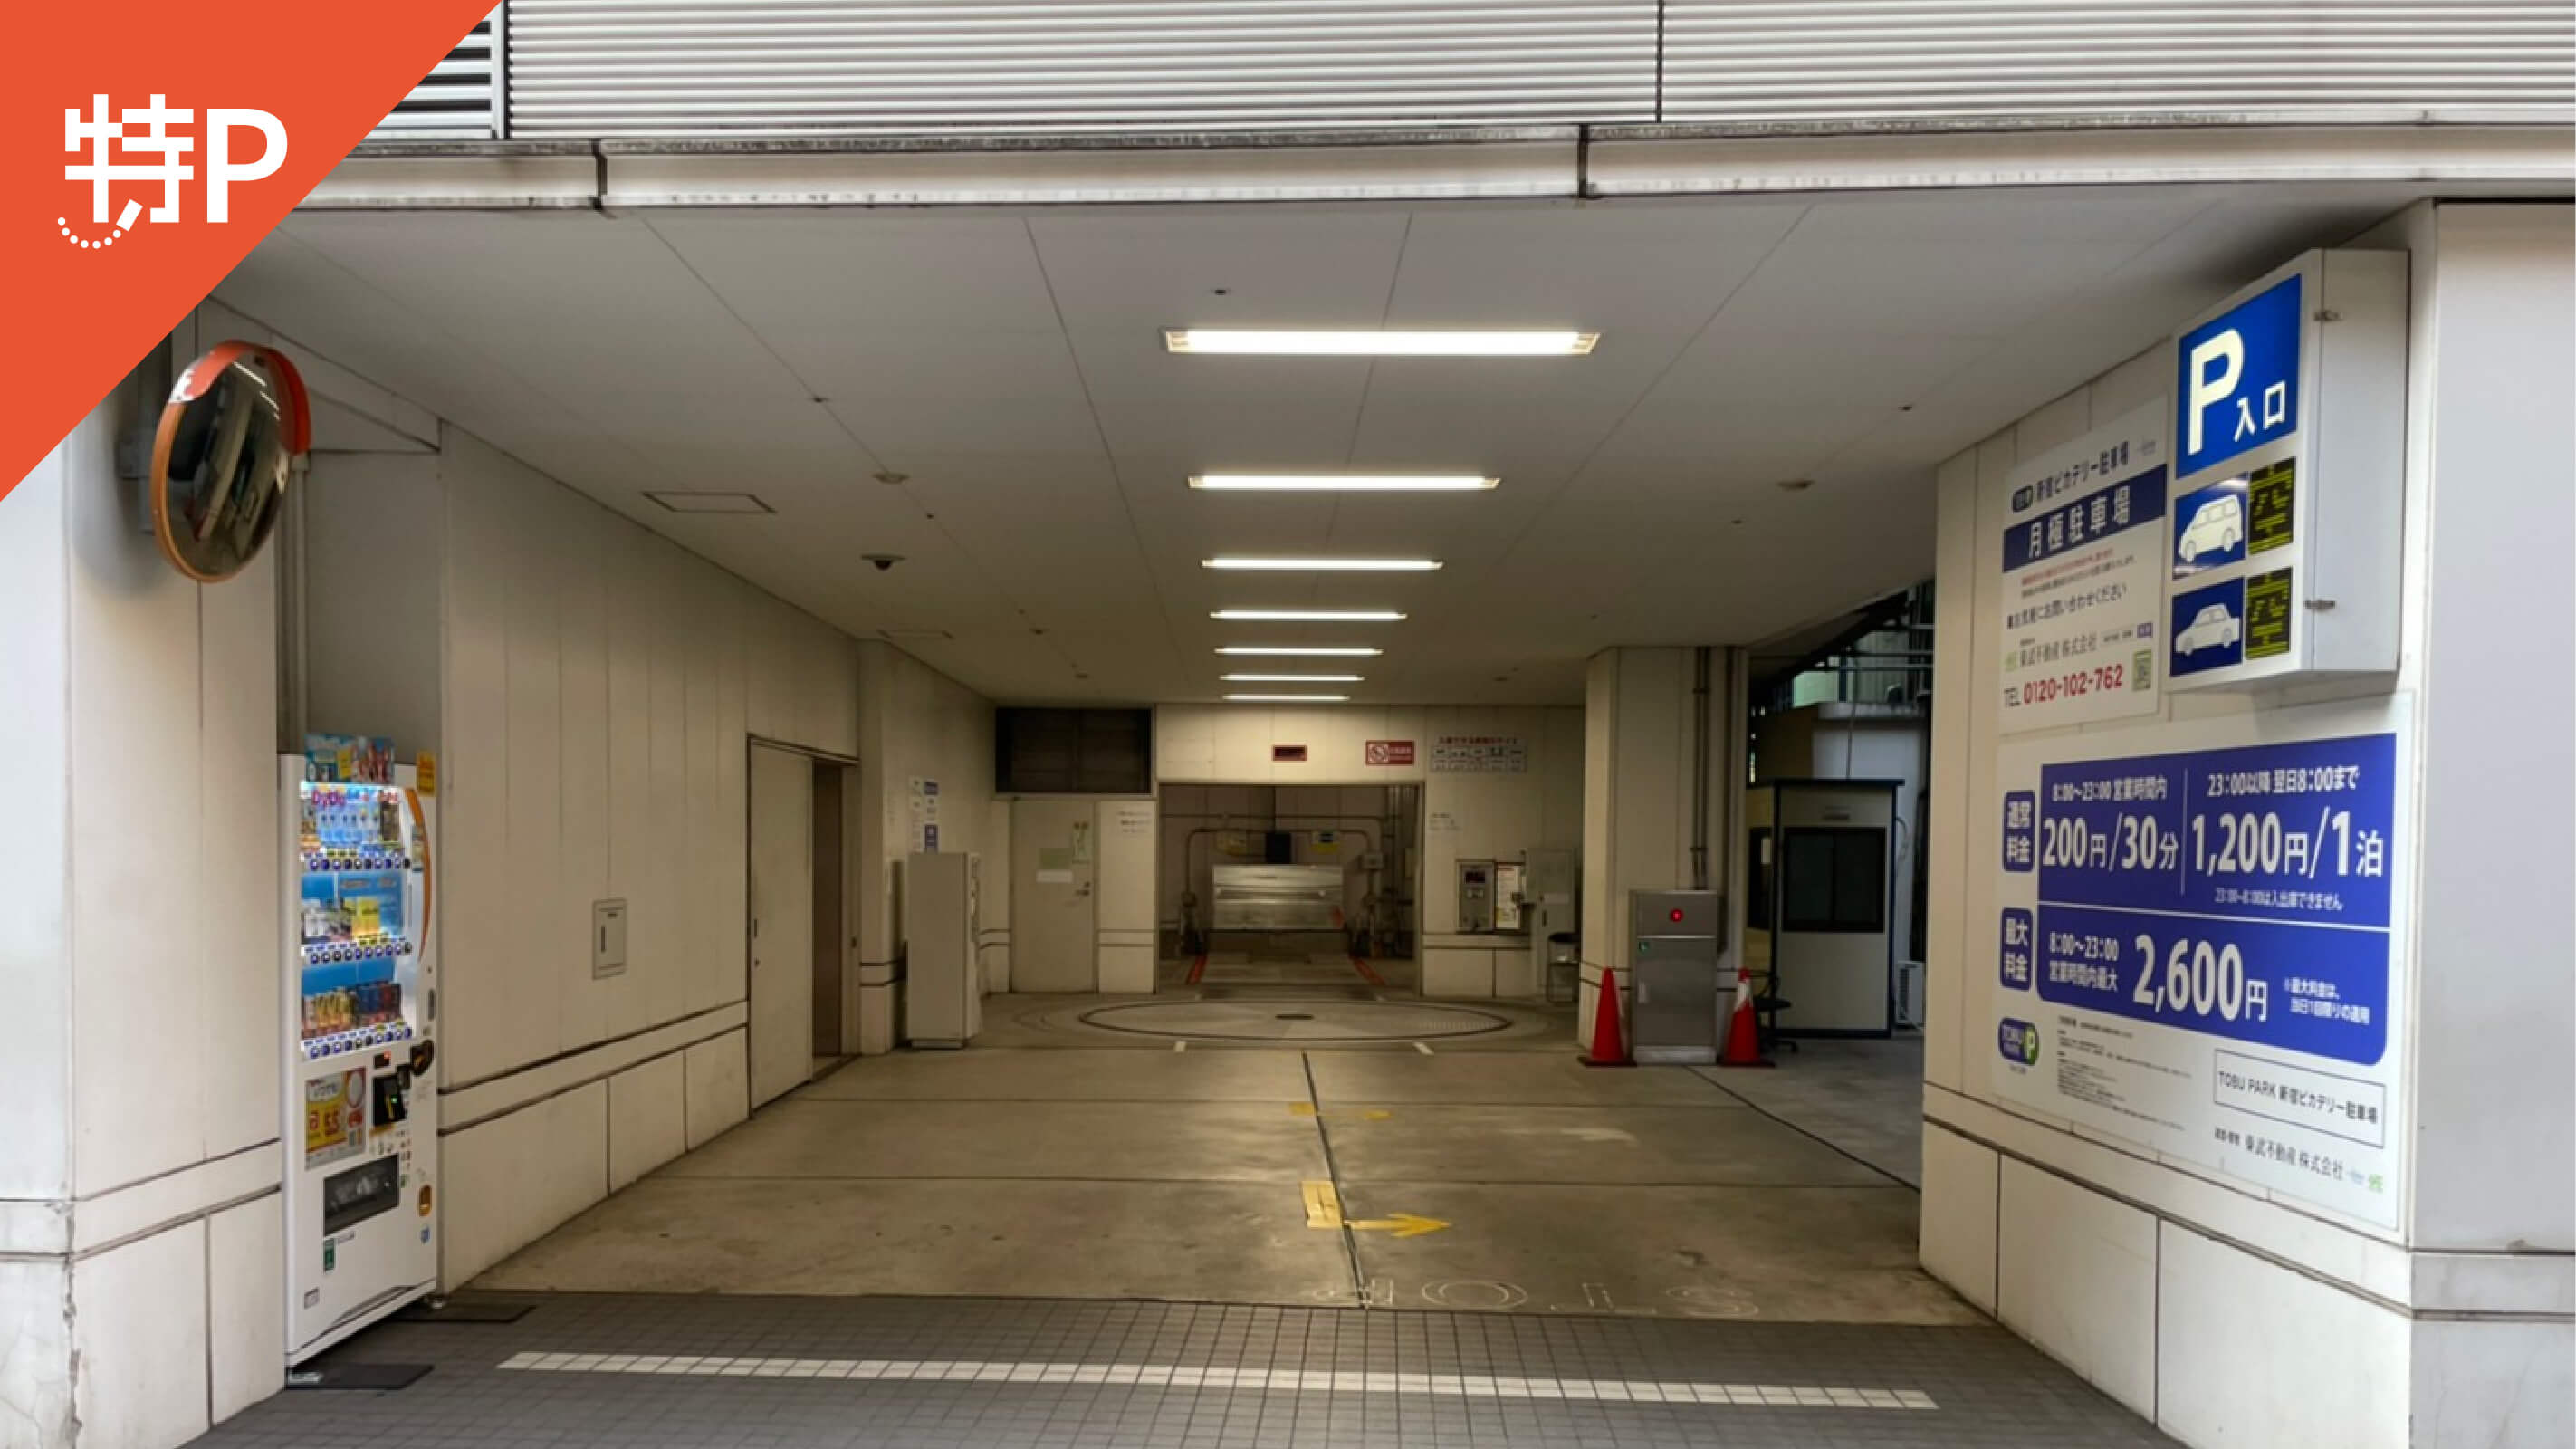 【予約制】特P (機械式)【ハイルーフ】新宿3-15-15駐車場の画像1